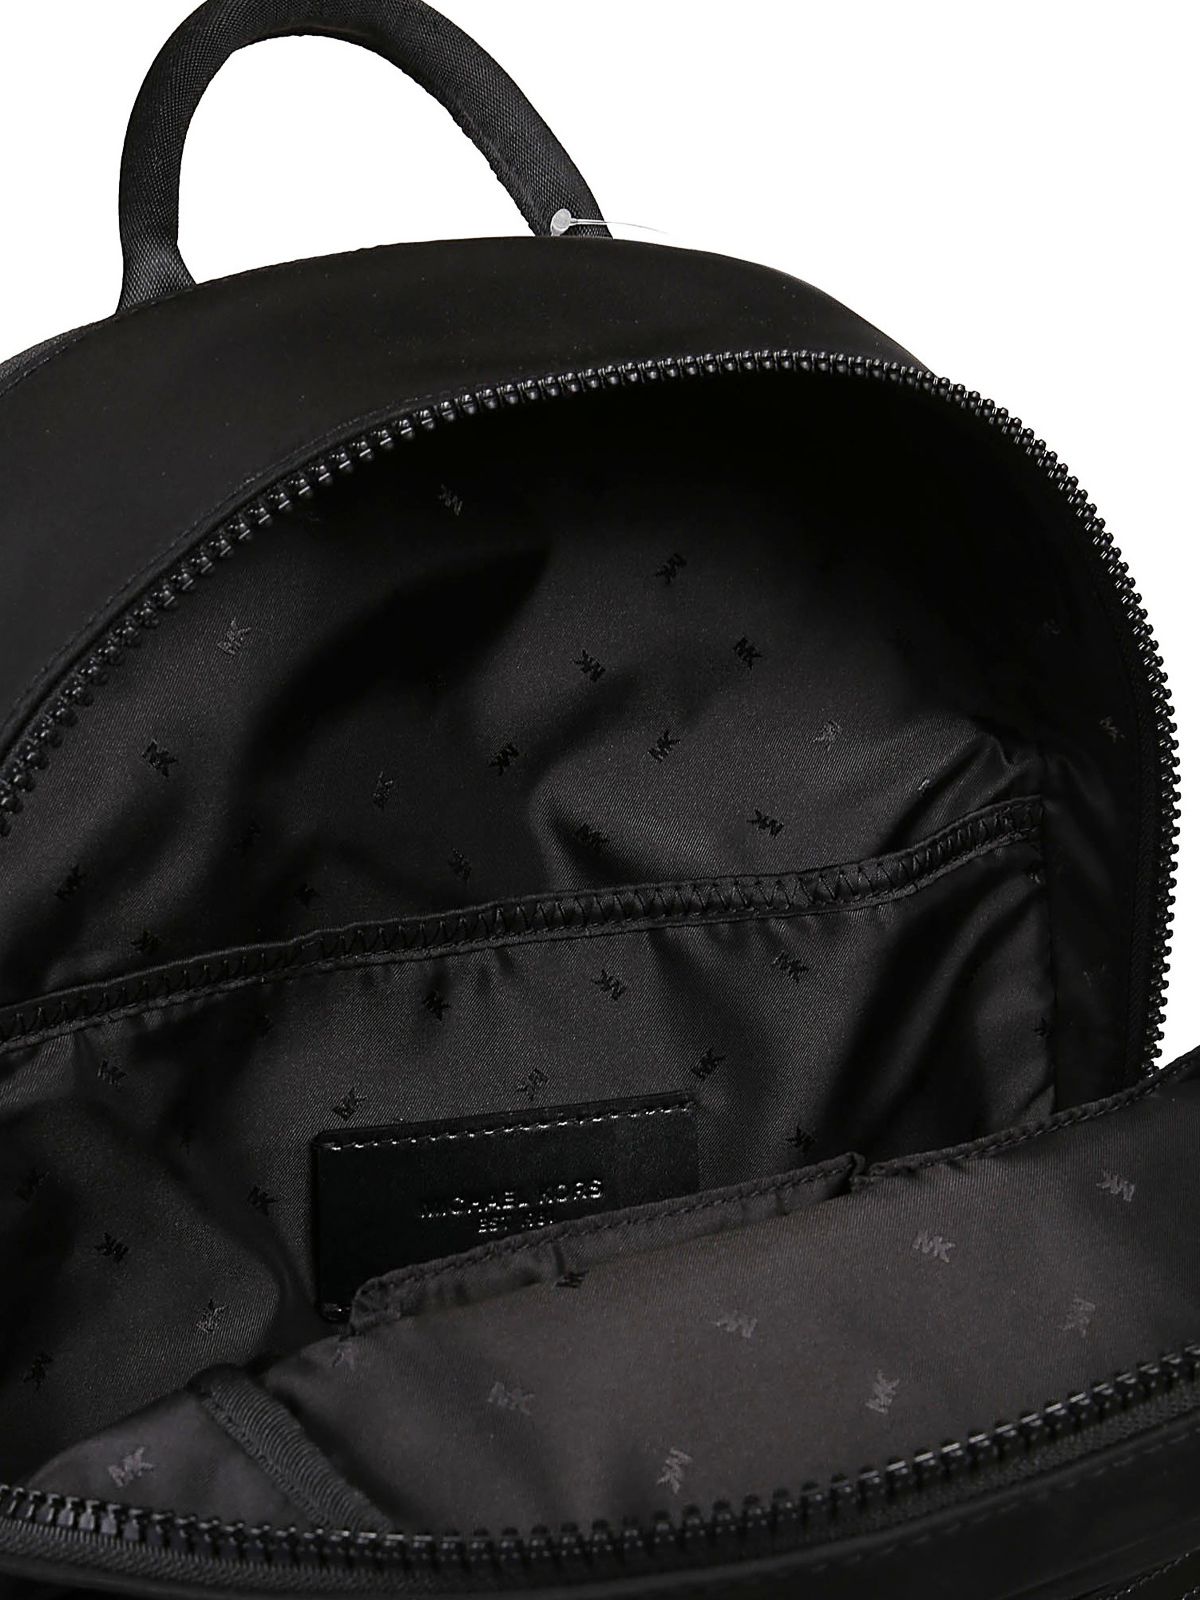 Backpacks Michael Kors - Brooklyn black nylon backpack - 33F9LBNB2U001